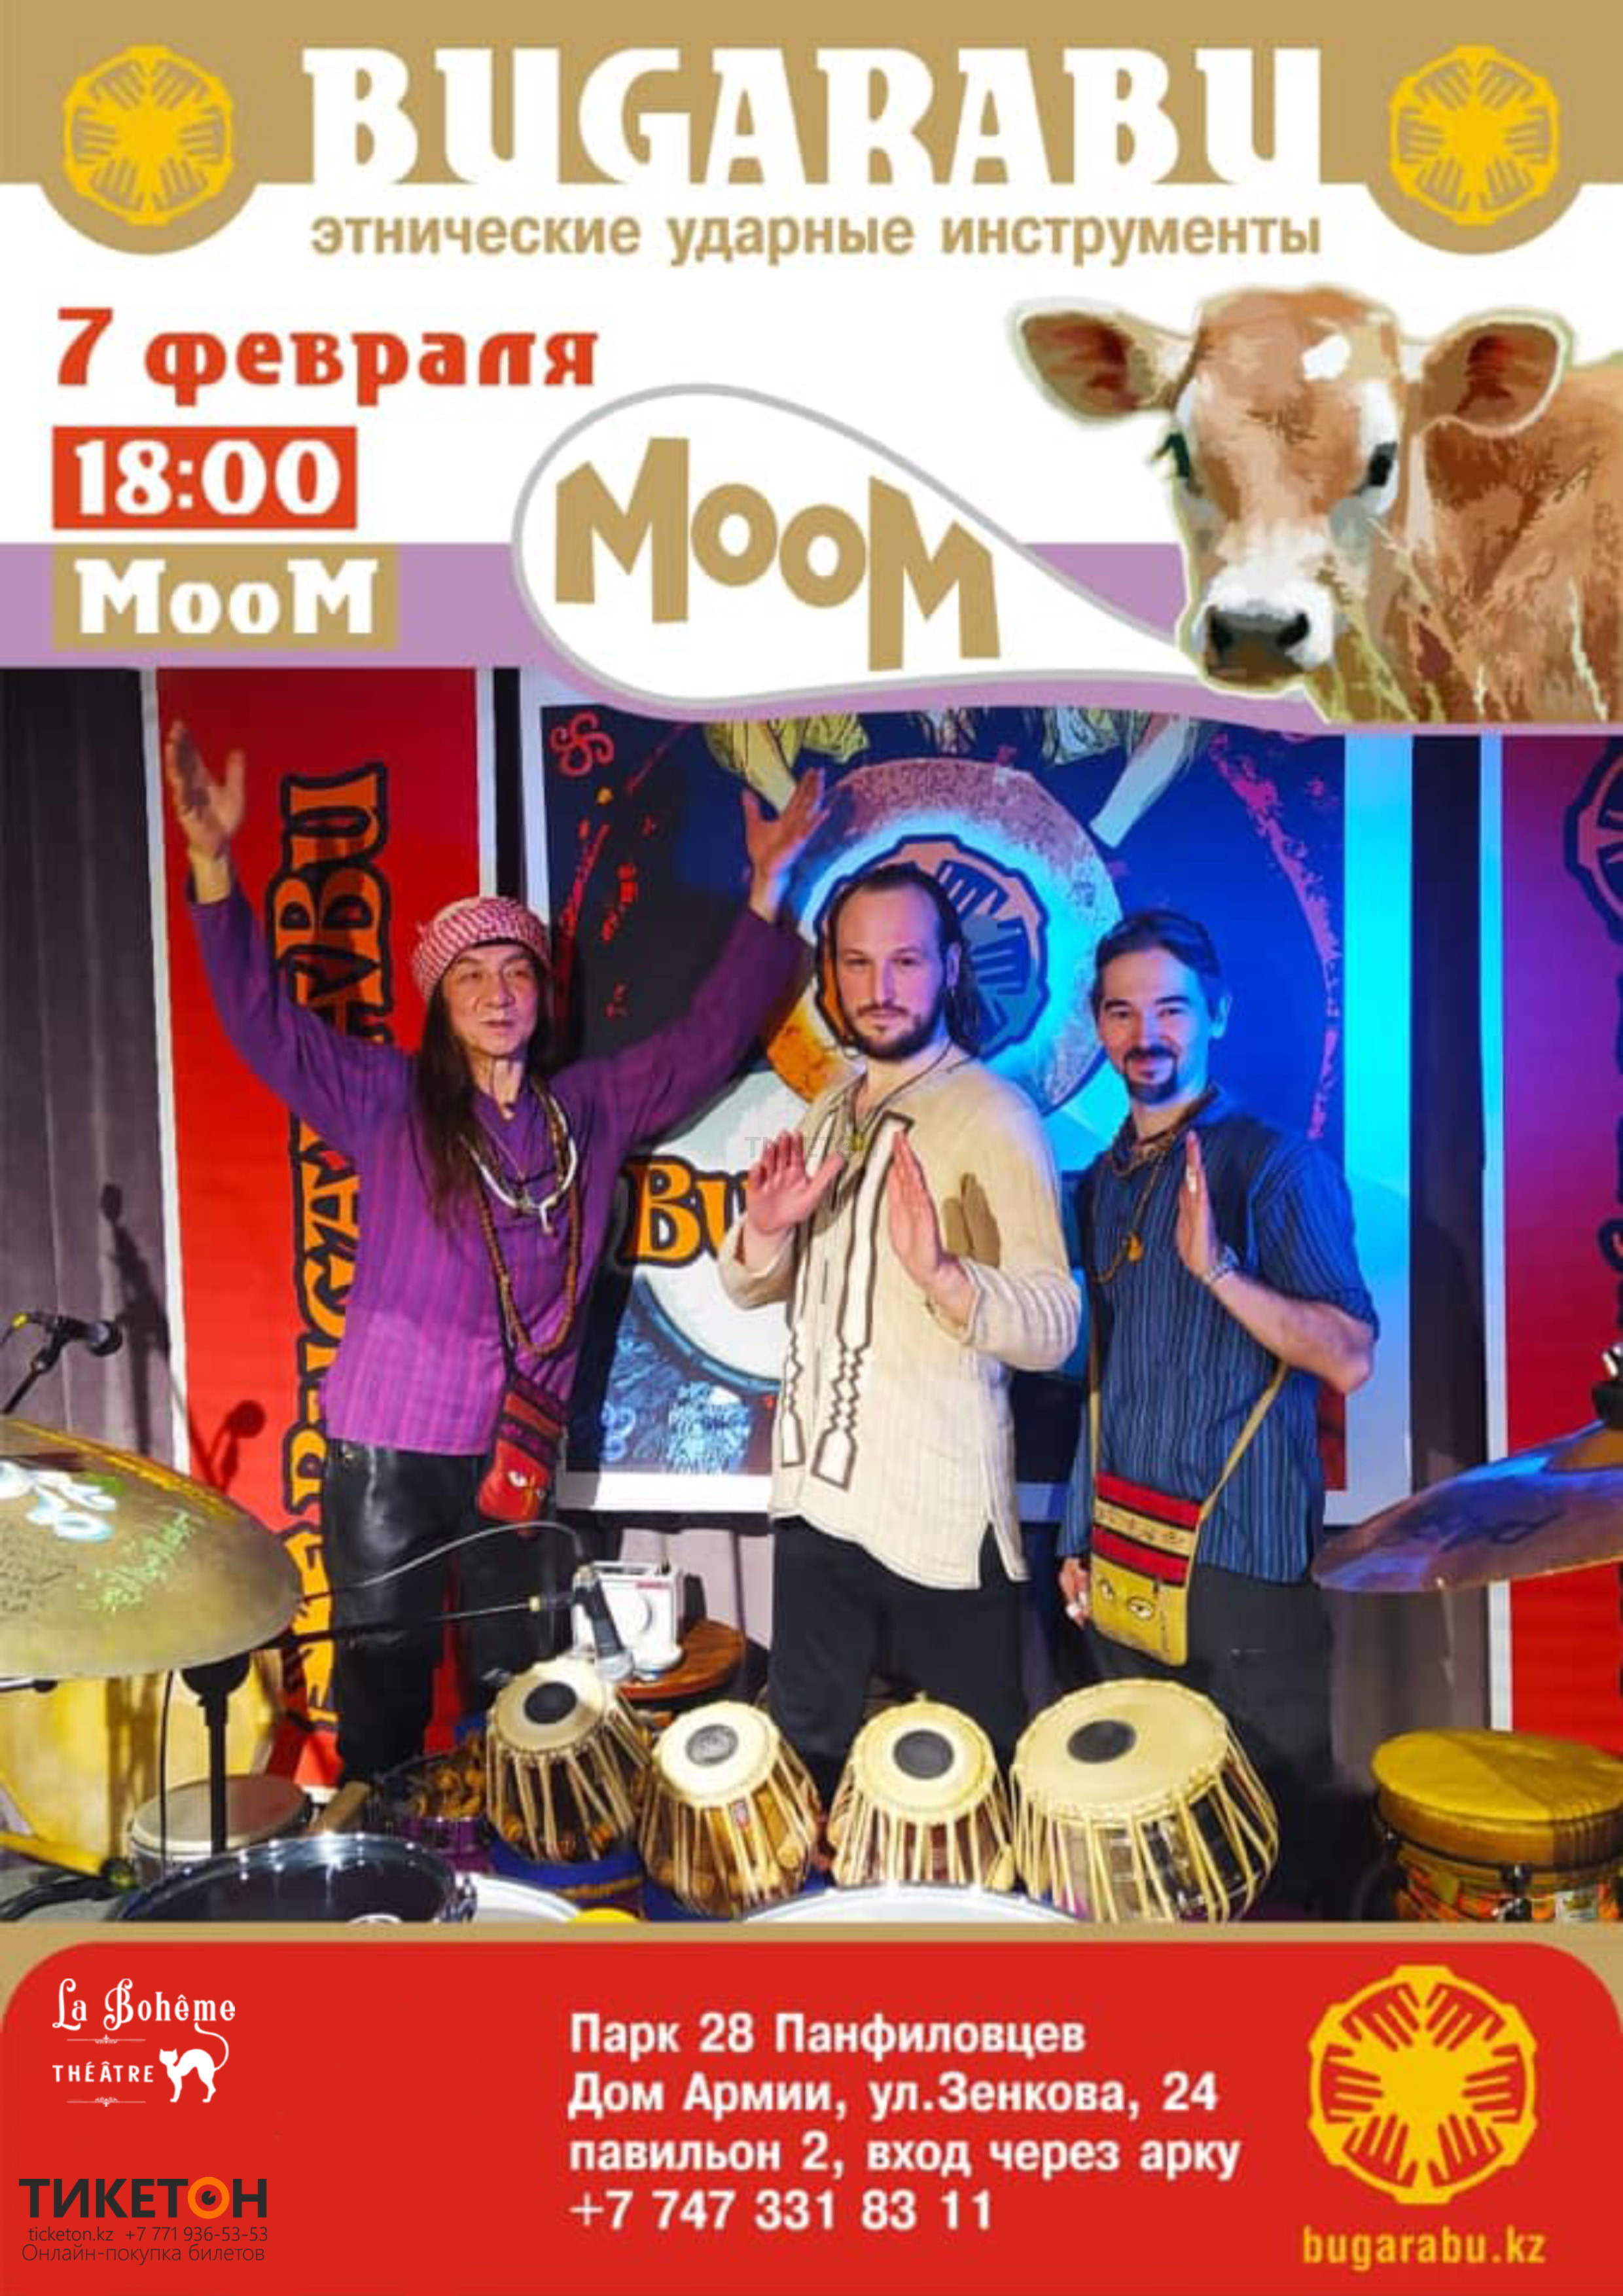 «Moom» праздничное представление от группы Bugarabu